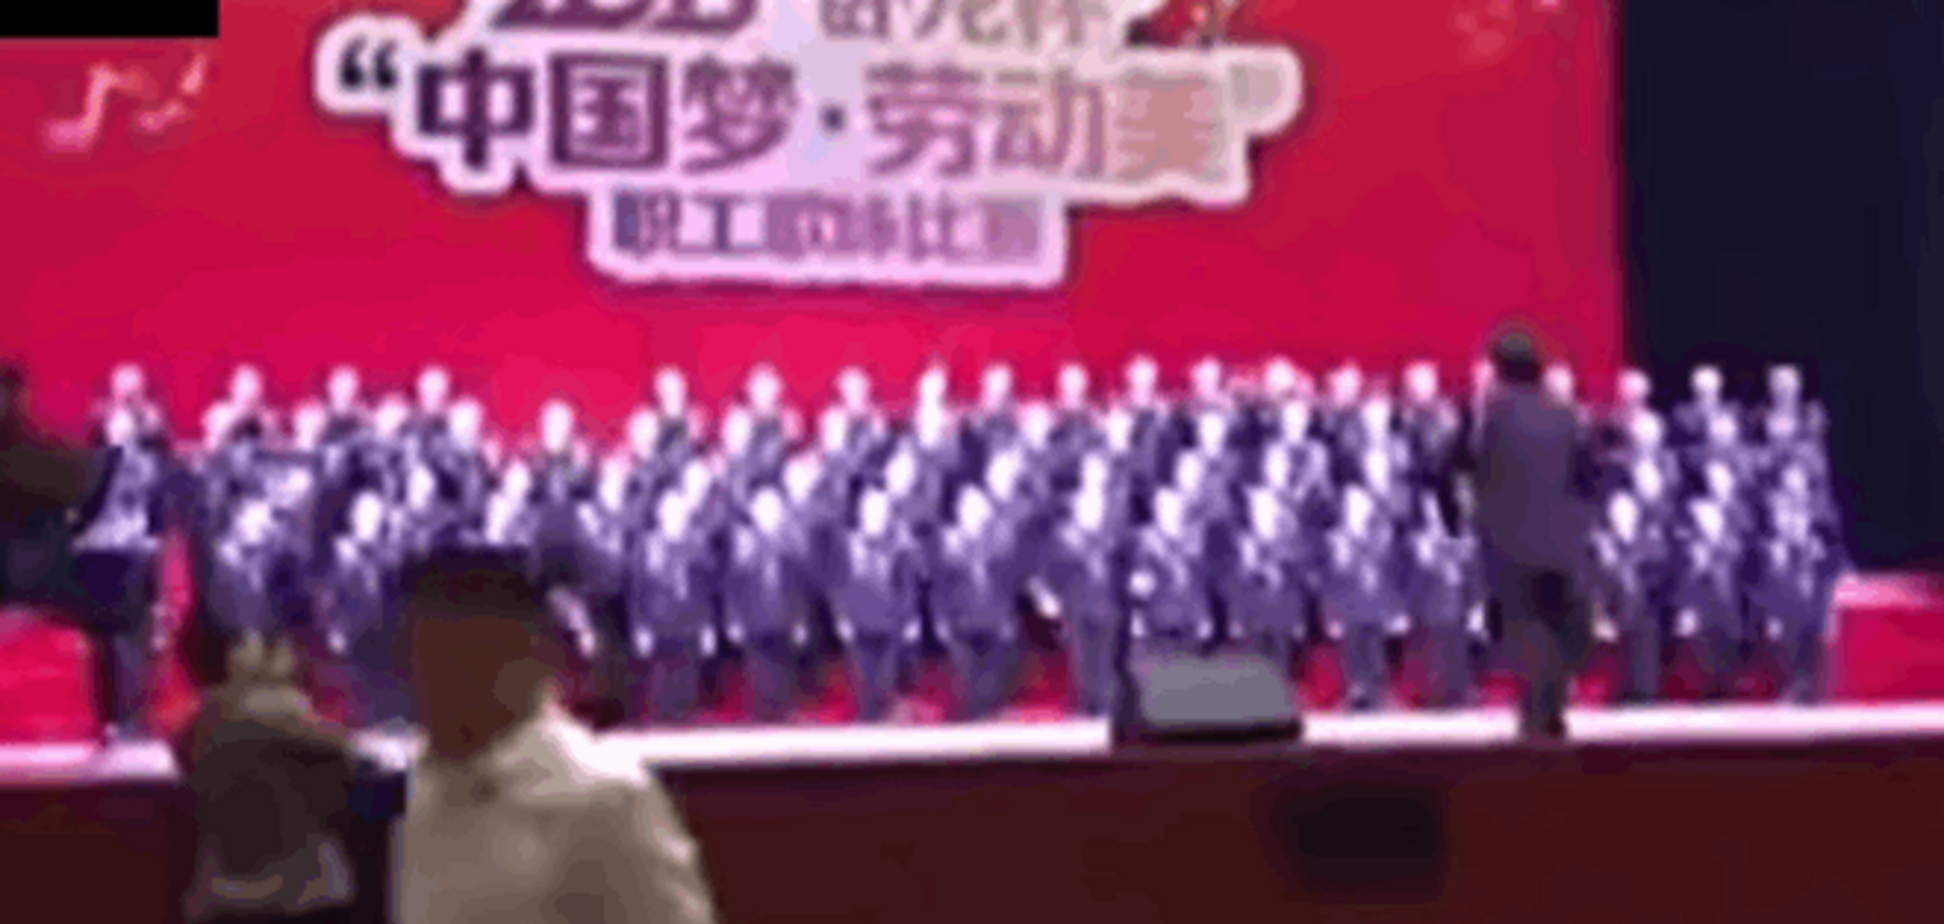 ЧП в Китае: хор из 80 человек провалился под сцену. Опубликовано видео